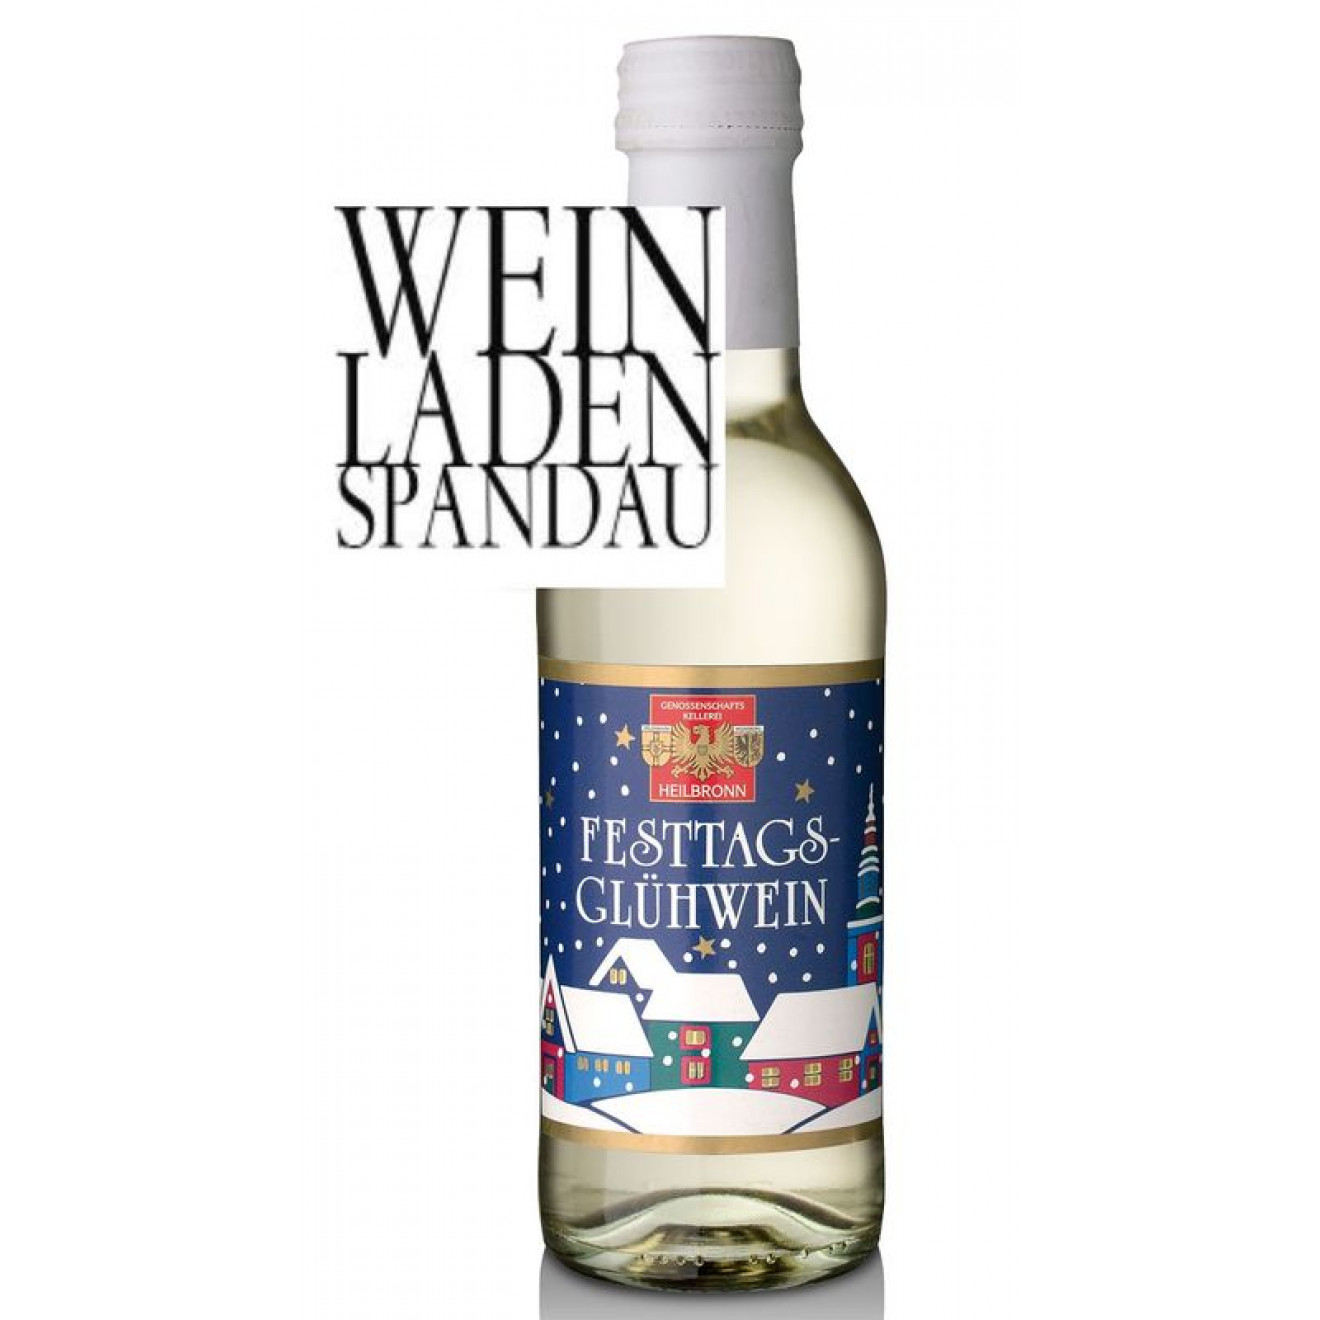 Festtags-Glühwein aus Württemberger Weißweinen 0,25l